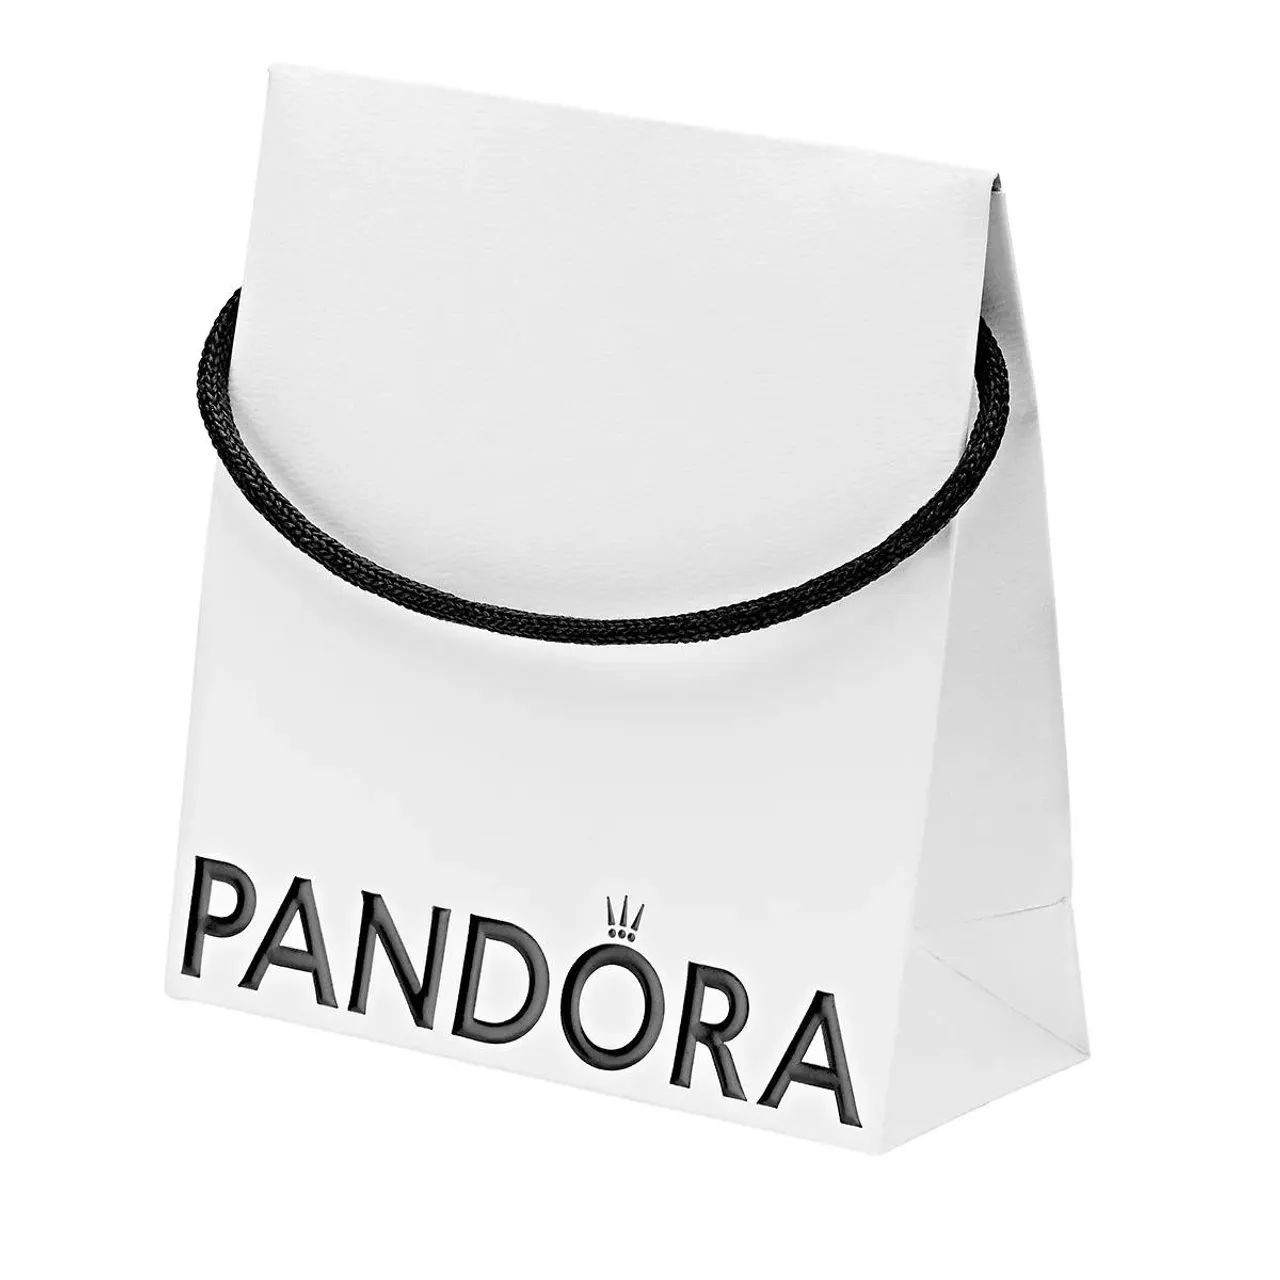 Pandora Earrings - Pandora Moments Charm Hoop Earrings -  - Earrings for ladies